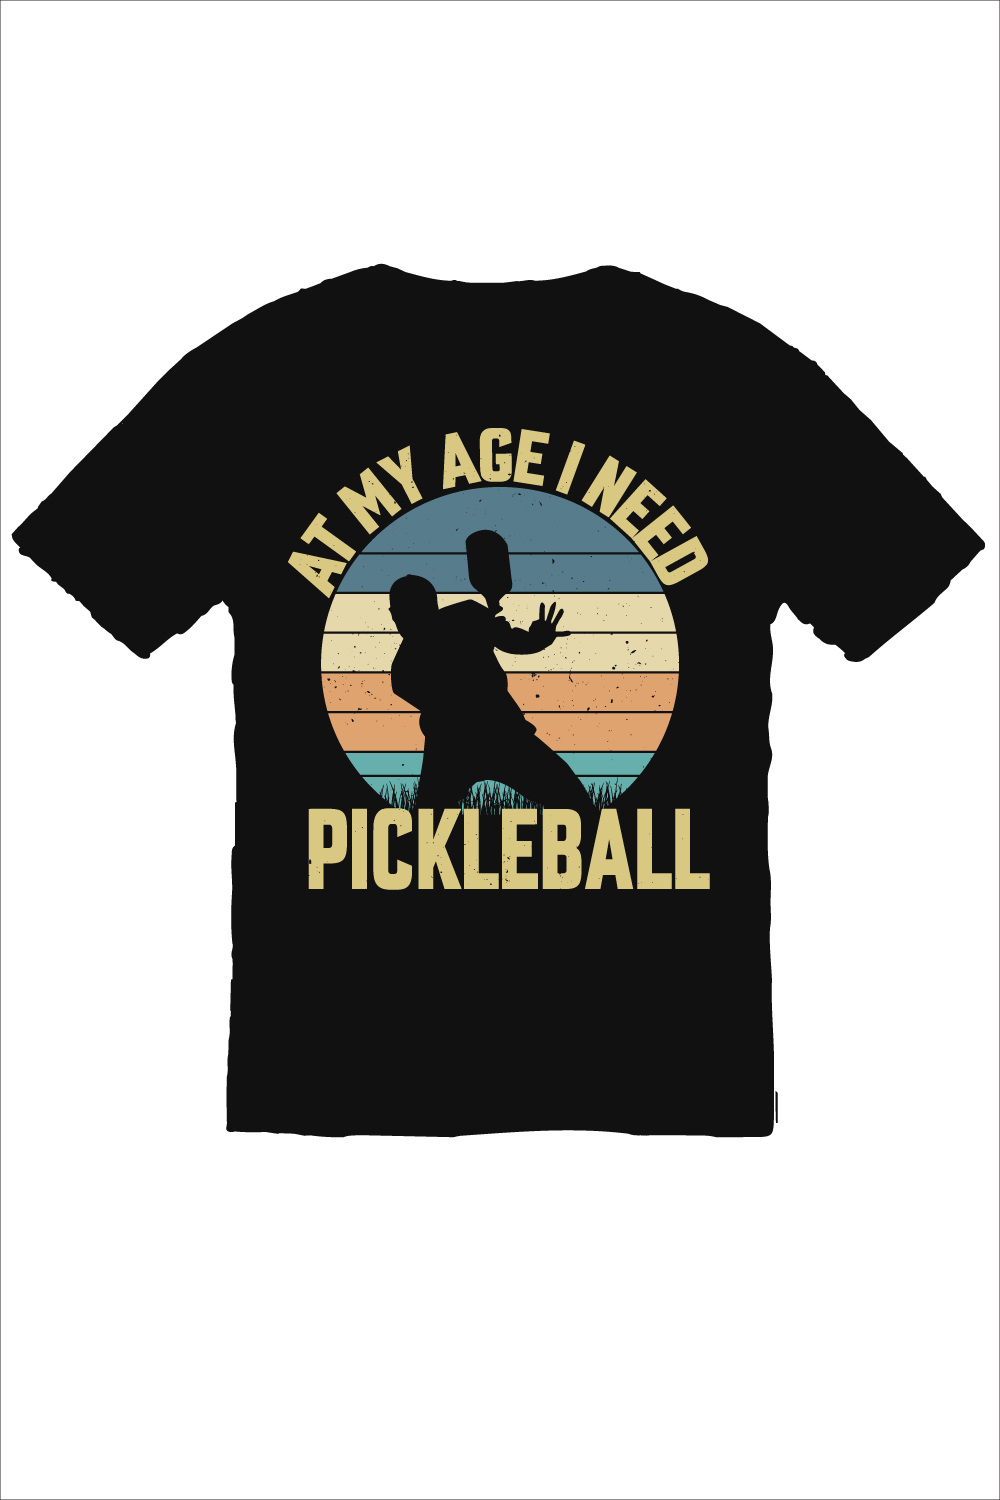 Pickleball tshirt design pinterest preview image.